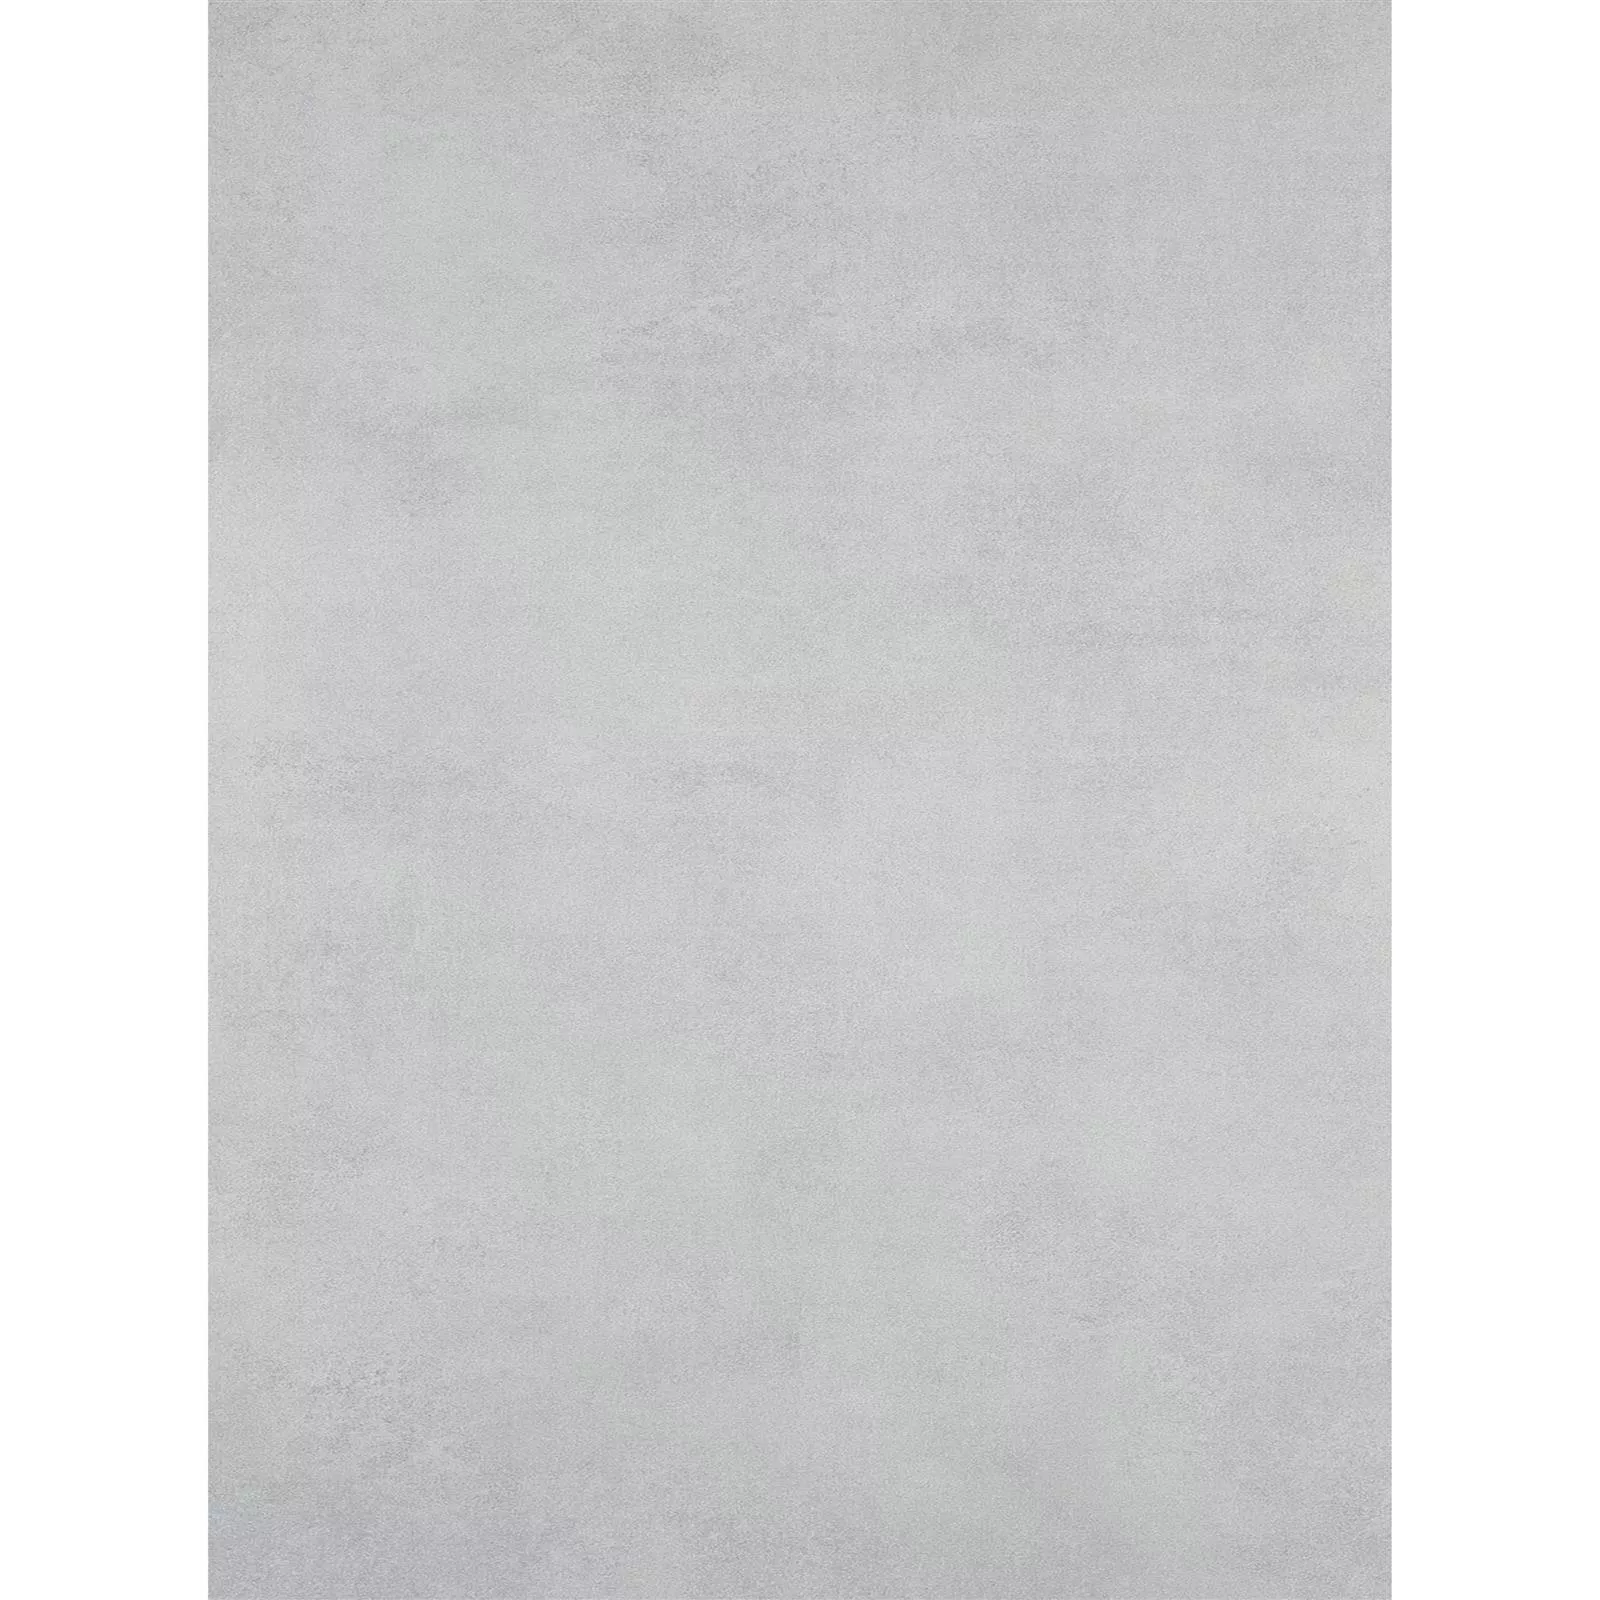 Πλακάκι Δαπέδου Mainland Συγκεκριμένη Εμφάνιση Αμεμπτος 60x120cm Γκρί